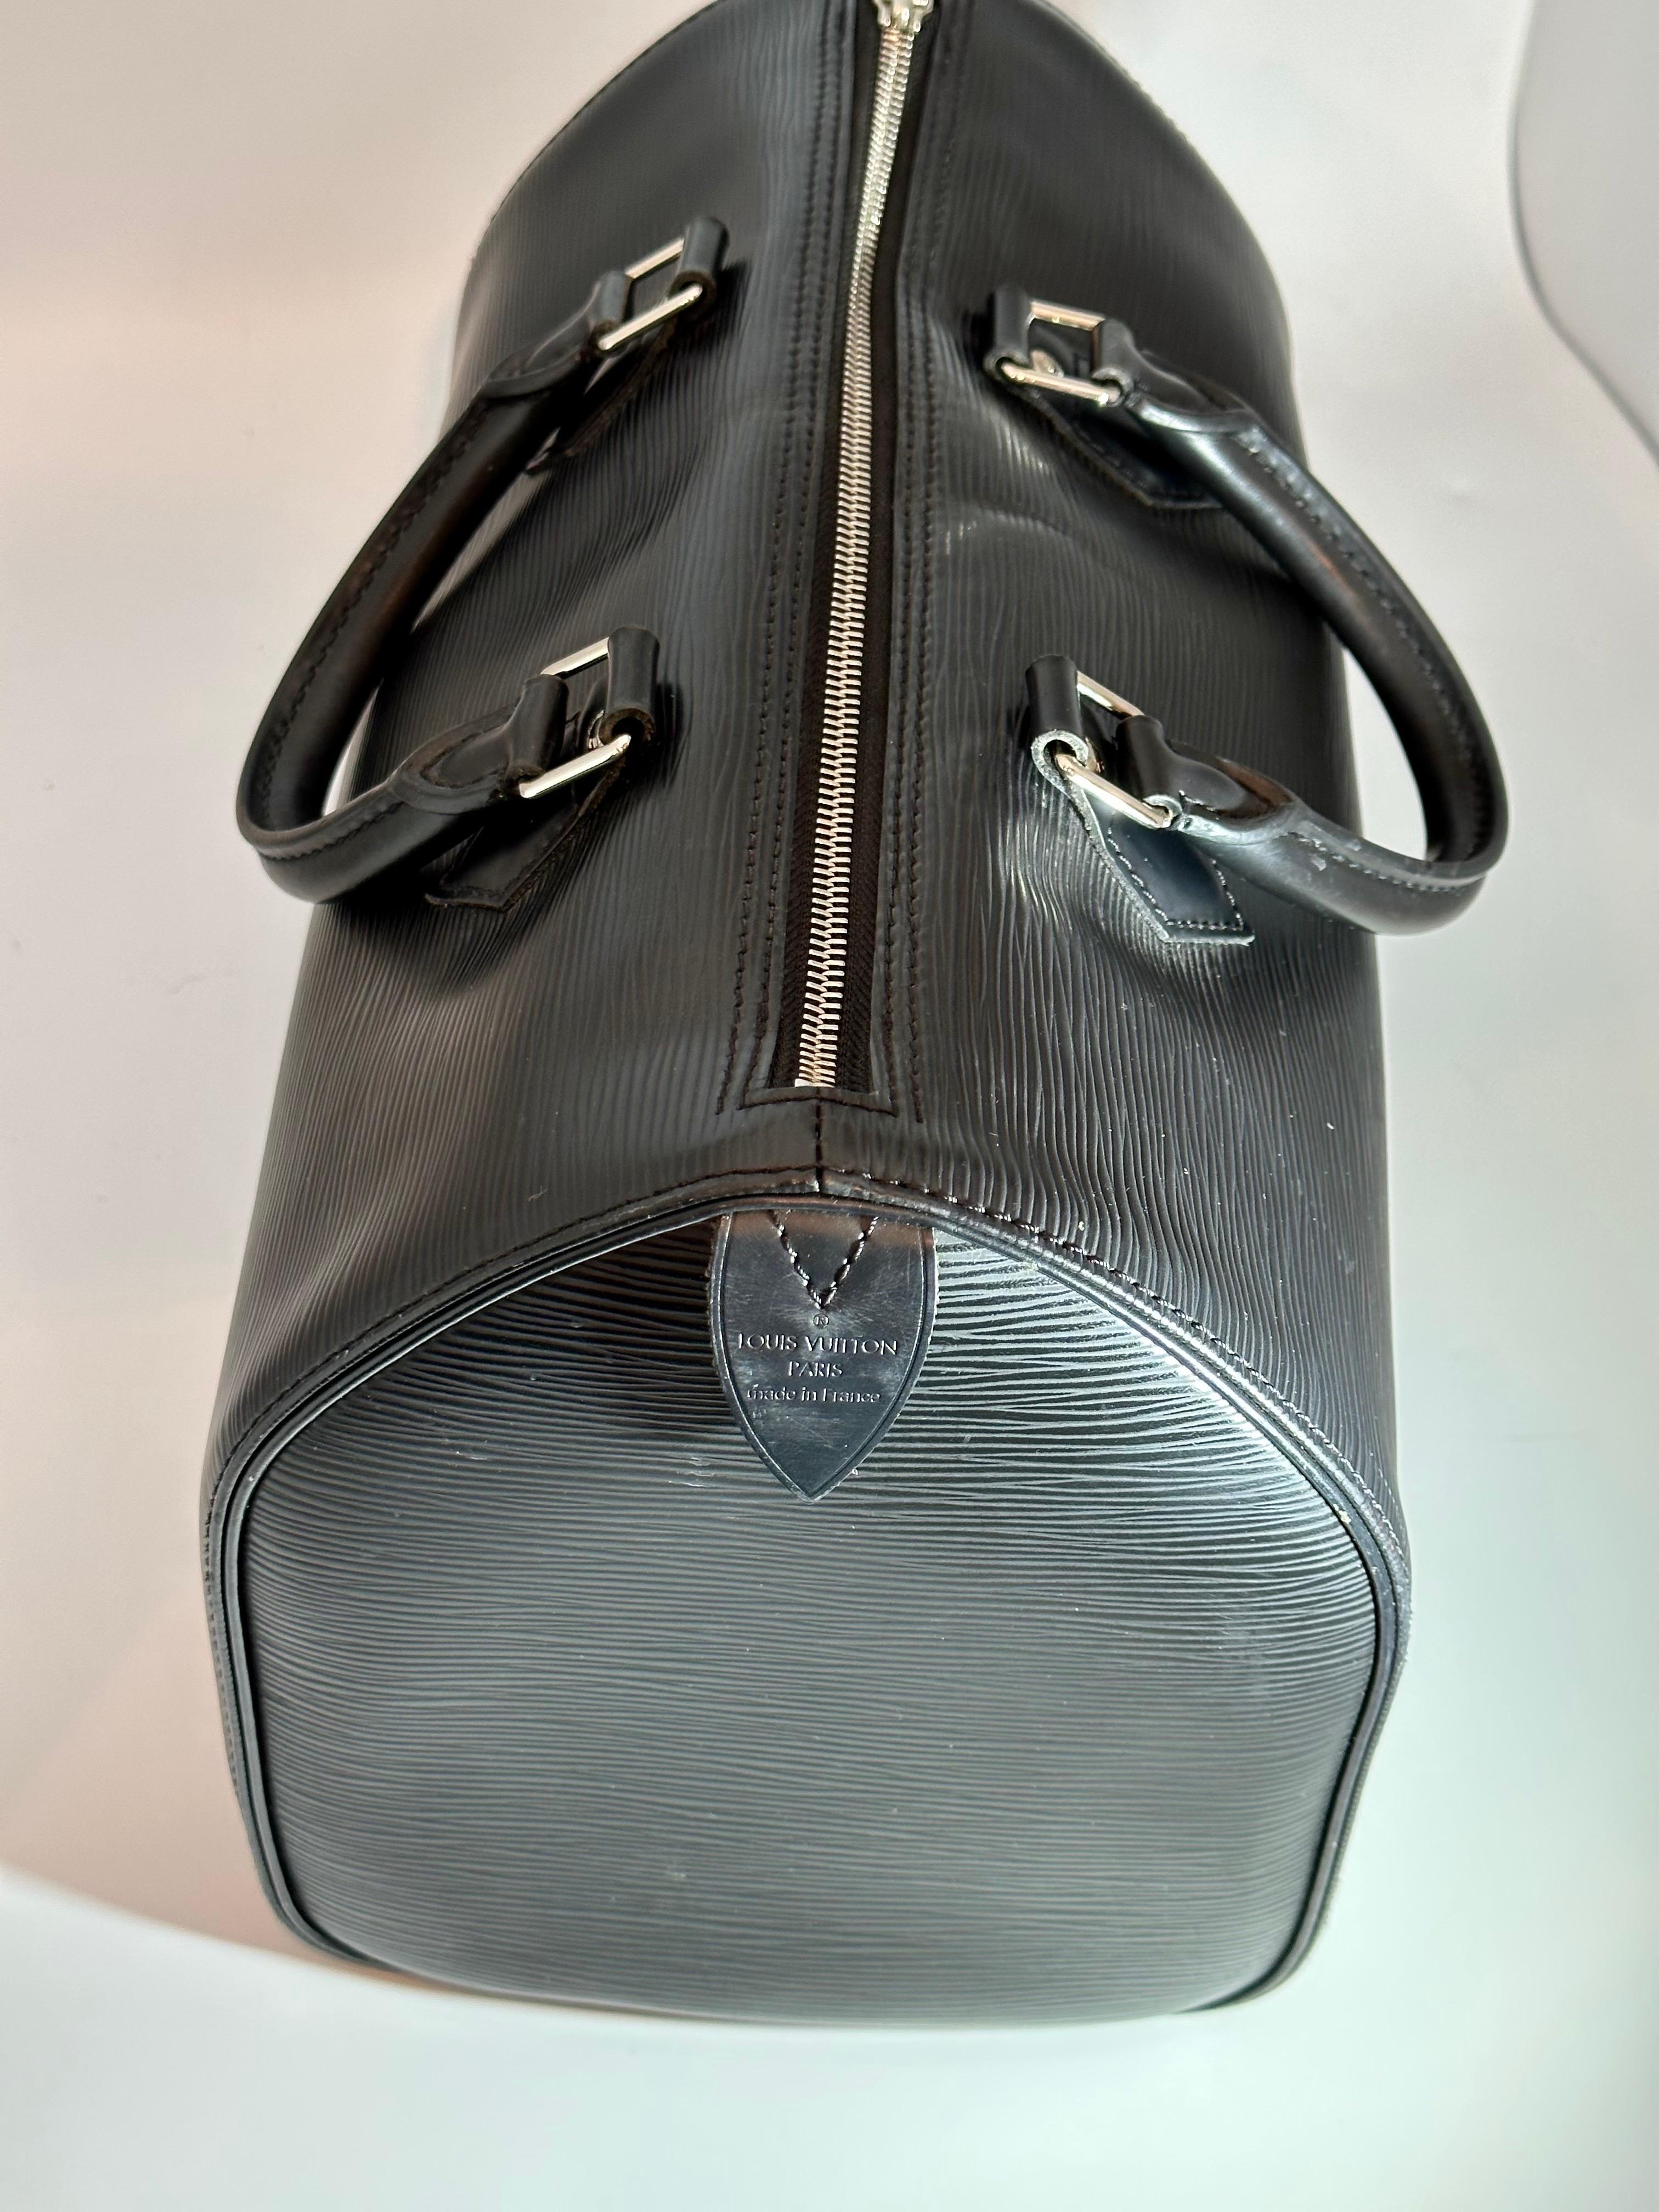 Women's Louis Vuitton Speedy Epi leather handbag  Excellent condition  Black, Leather